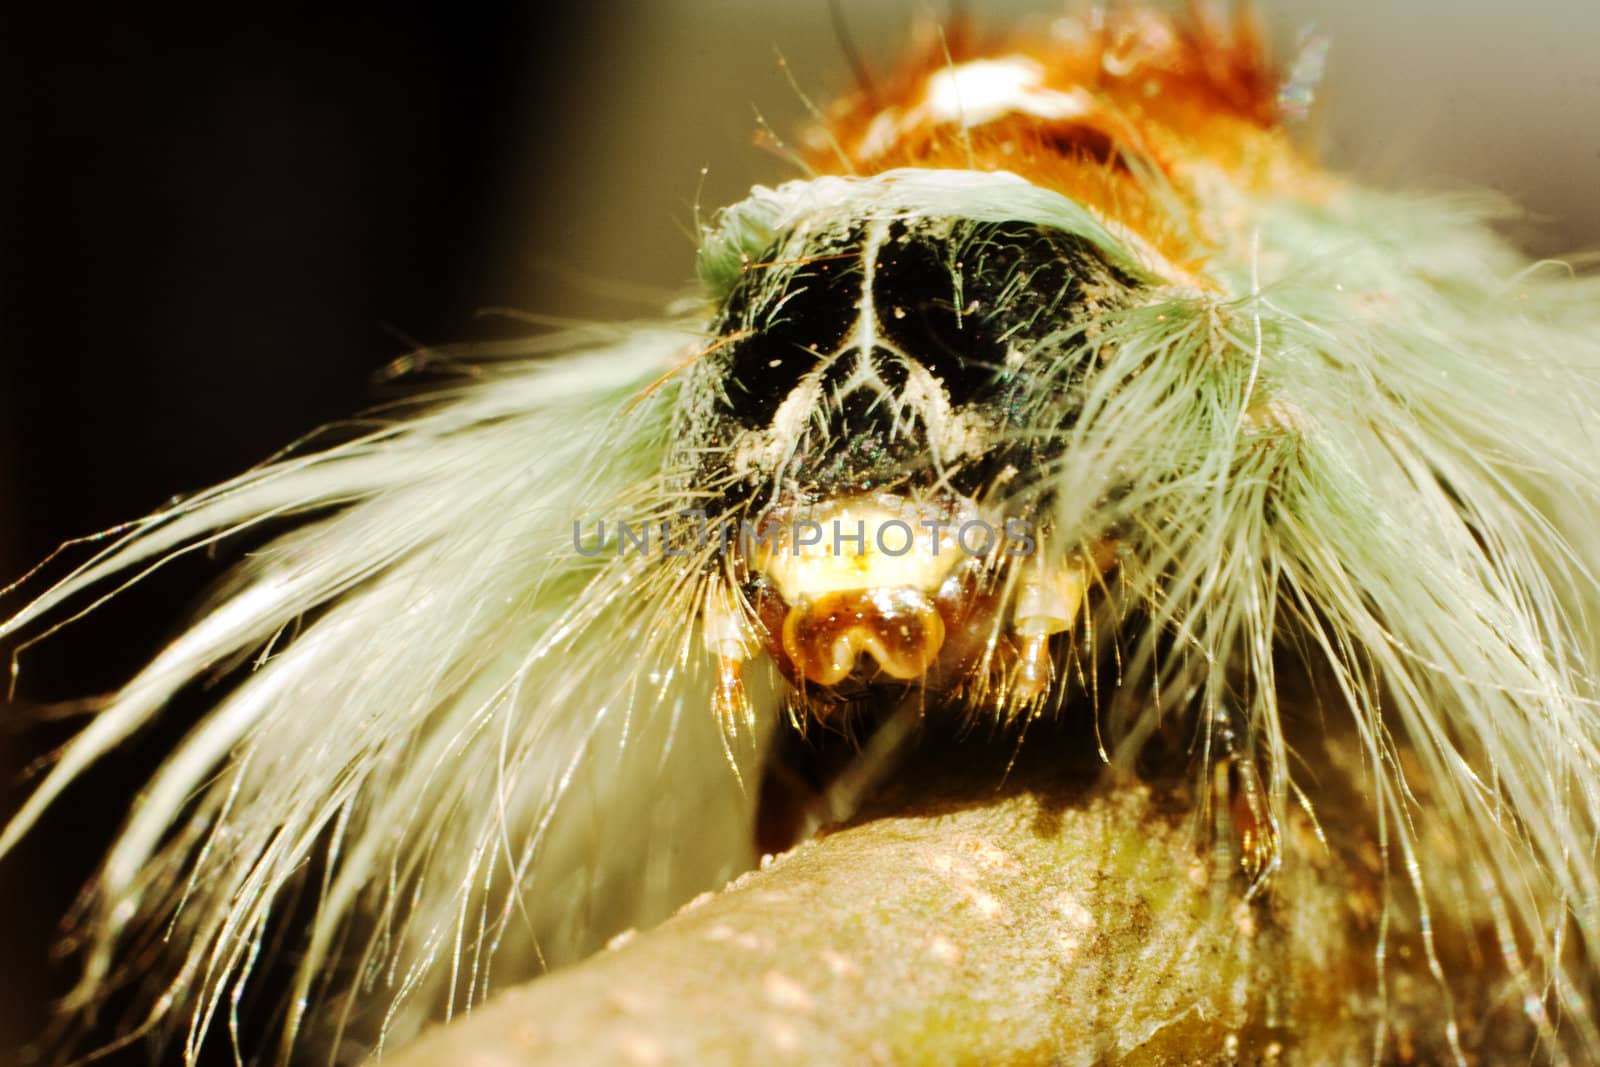 Hairy Caterpillar by kobus_peche